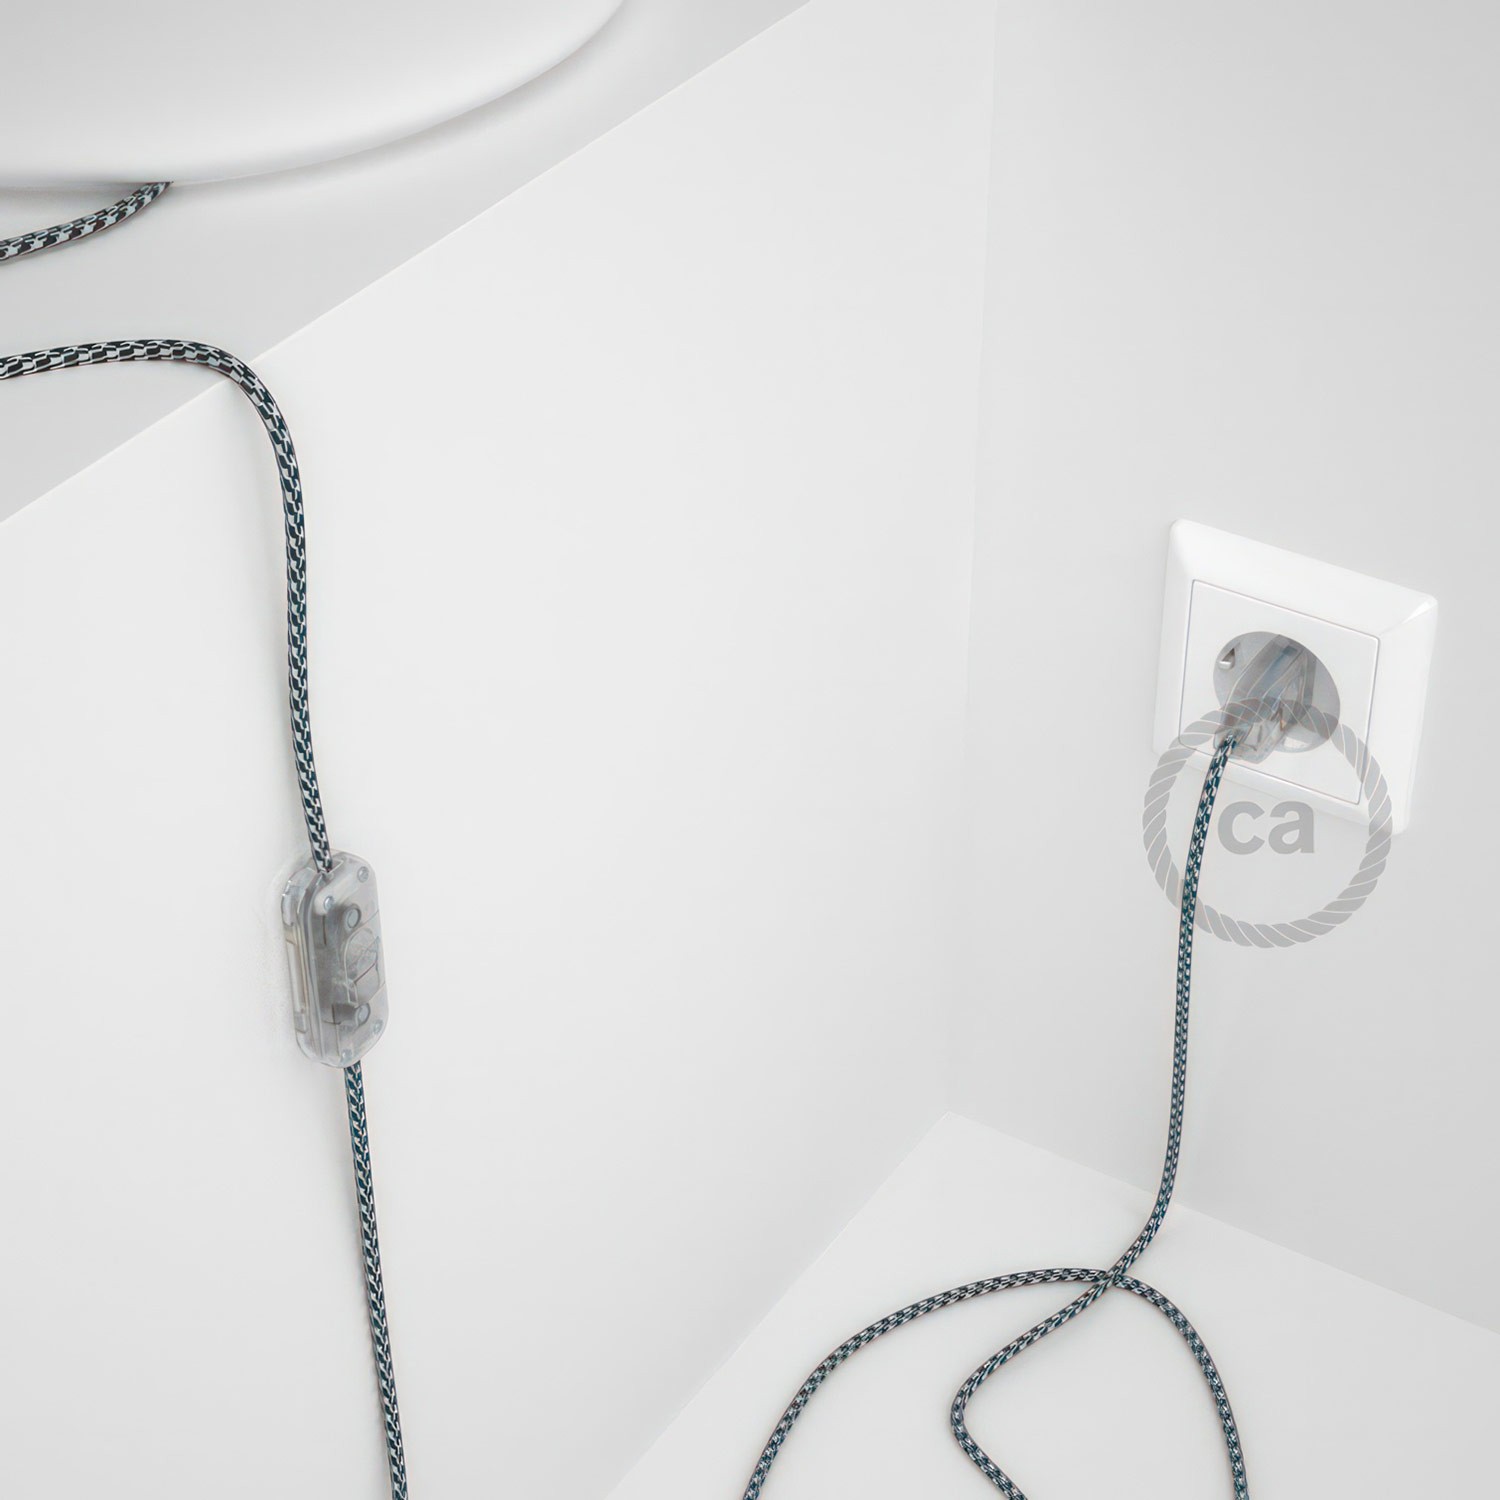 Cableado para lámpara, cable RP04 Efecto Seda Bicolor Blanco-Negro 1,8m. Elige tu el color de la clavija y del interruptor!